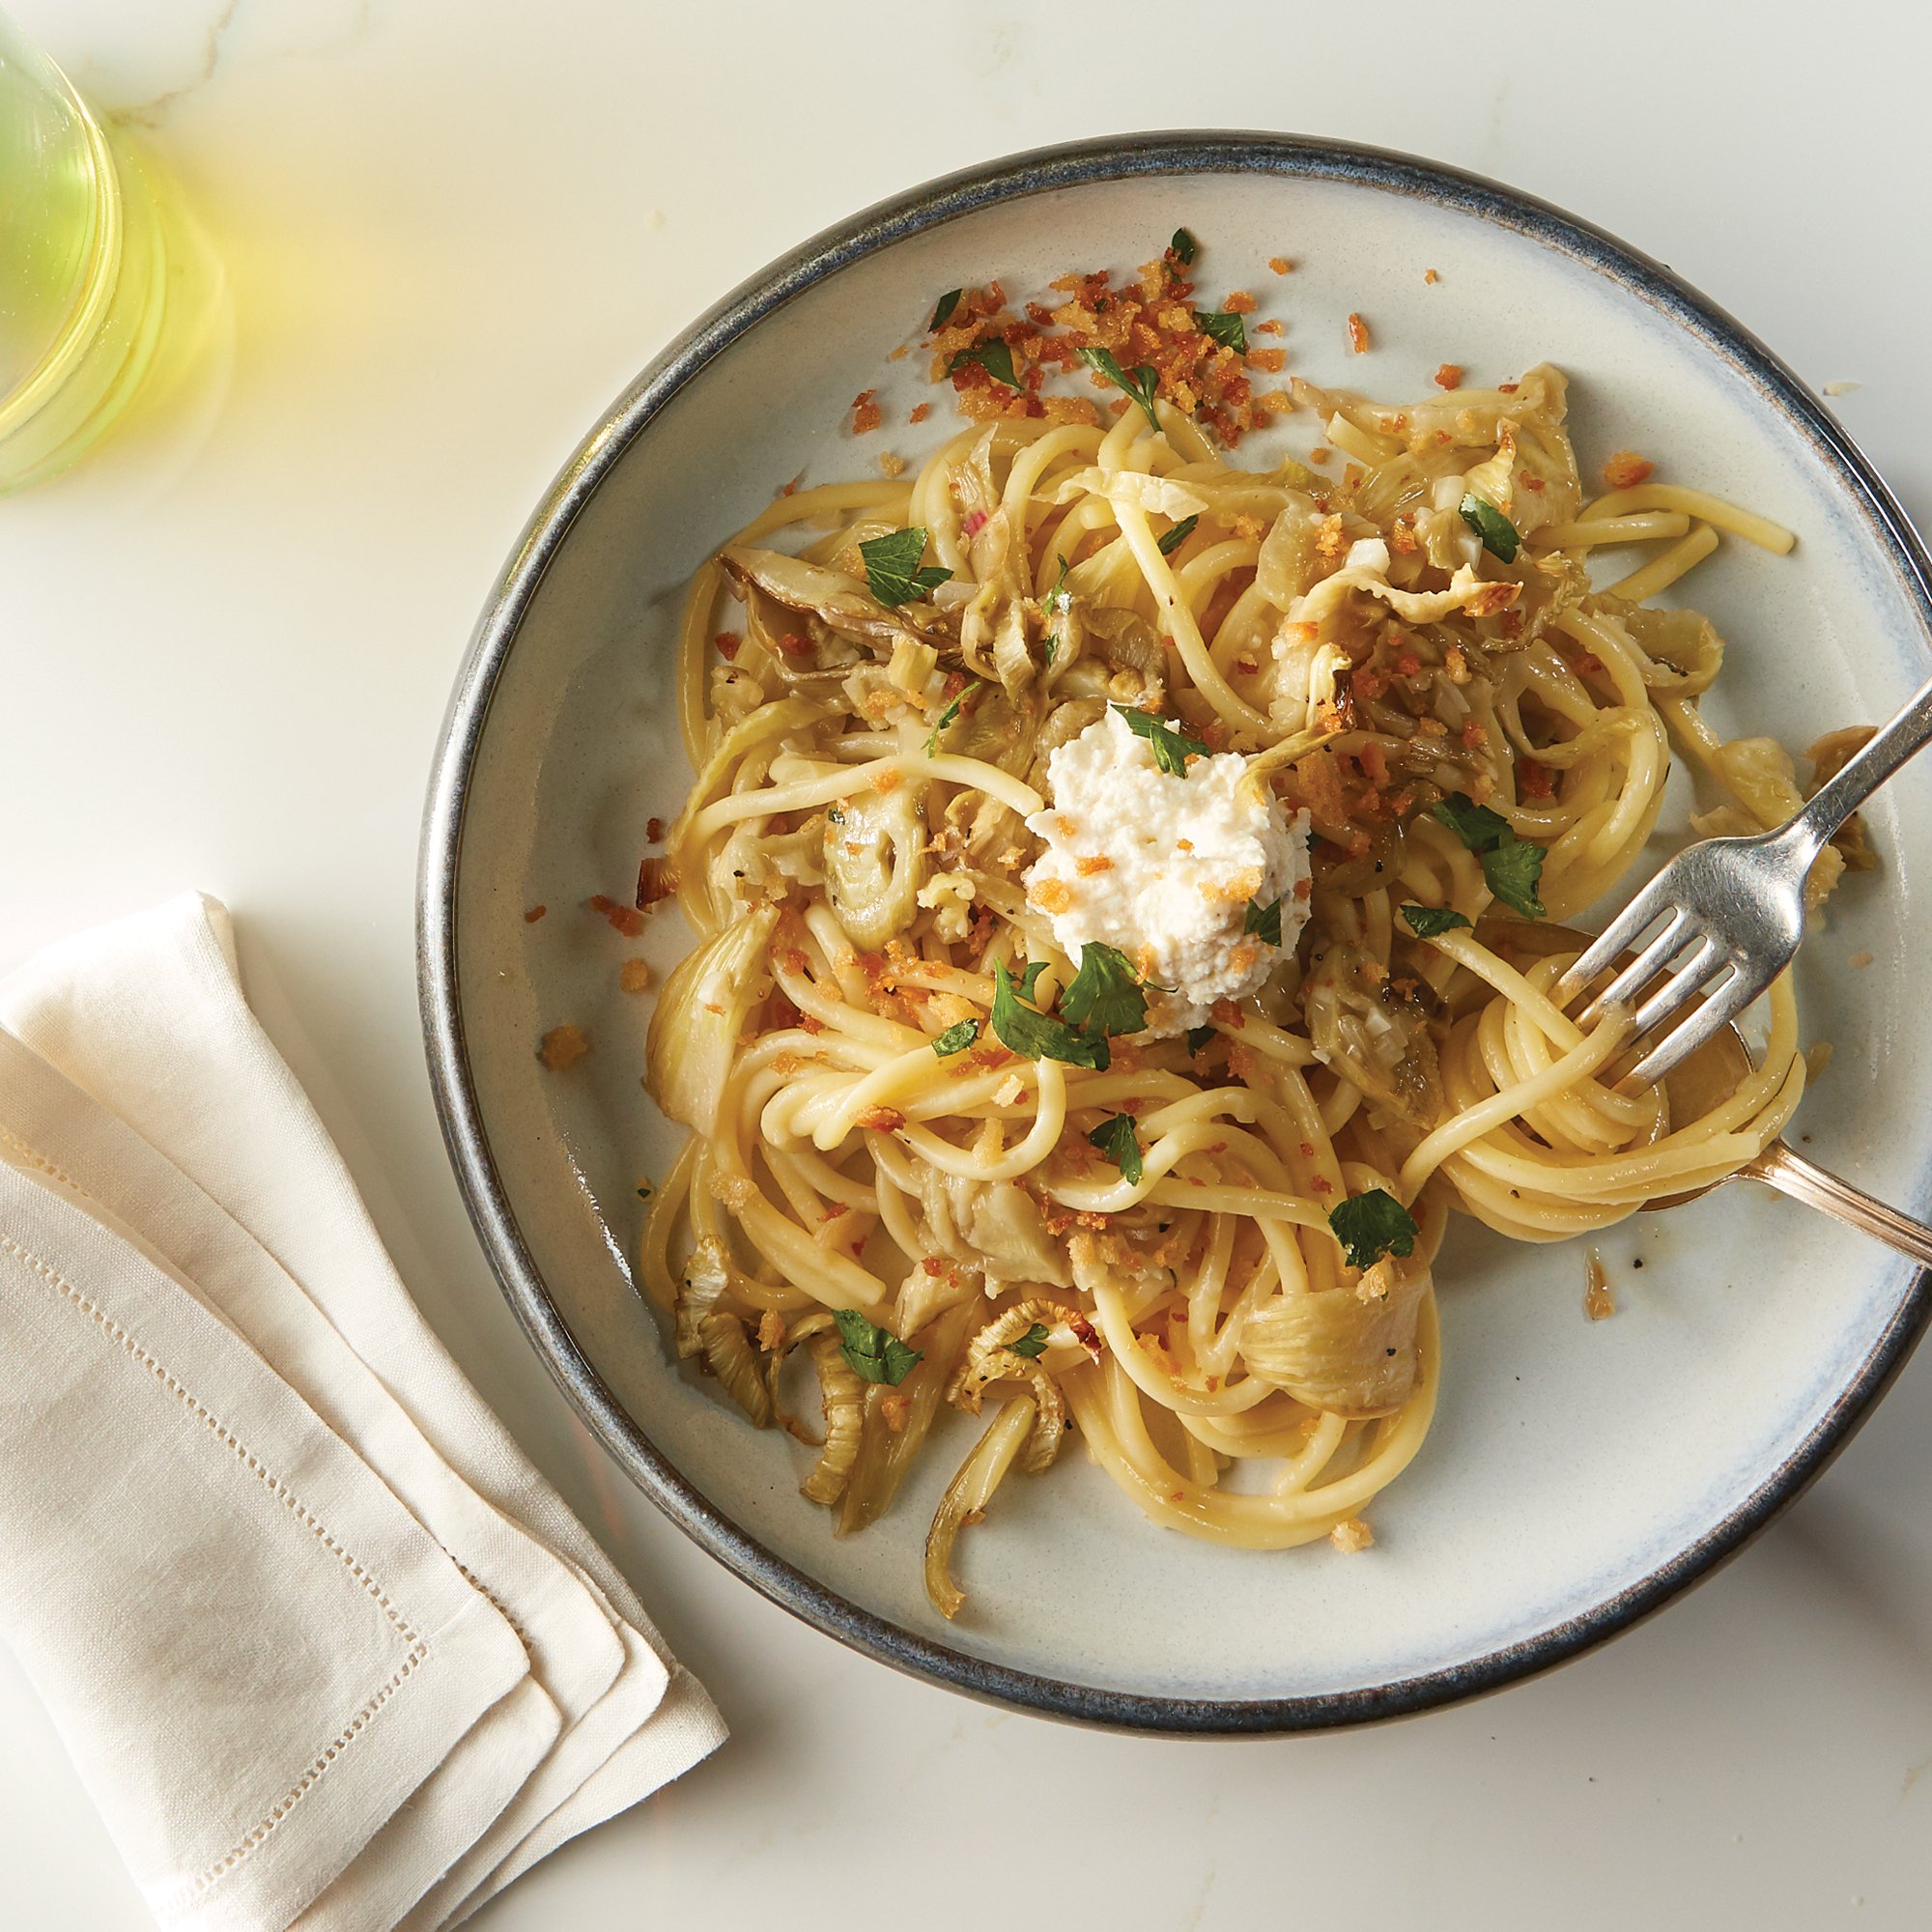 How to Make Fresh Spaghetti alla Chitarra